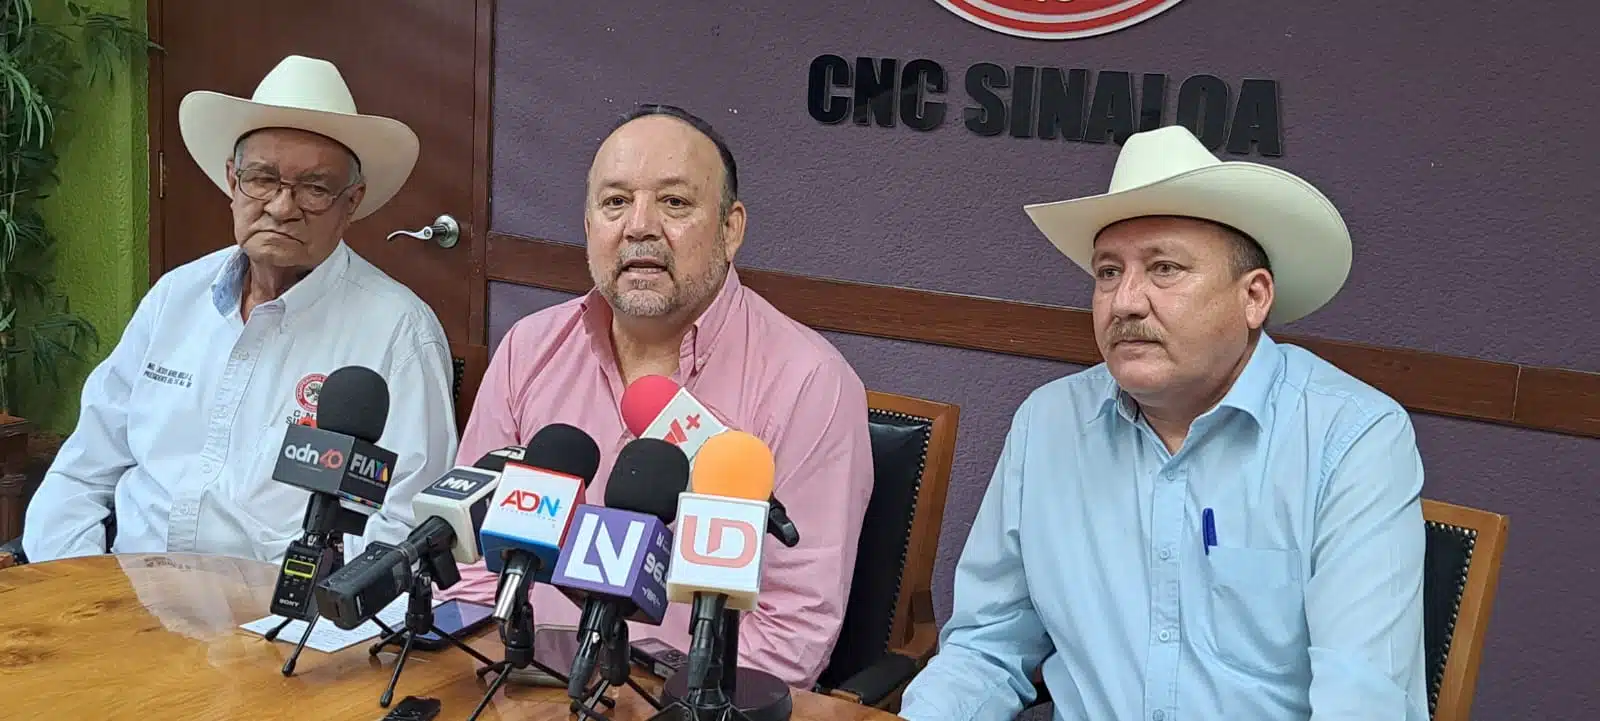 Presidente de la CNC en Sinaloa